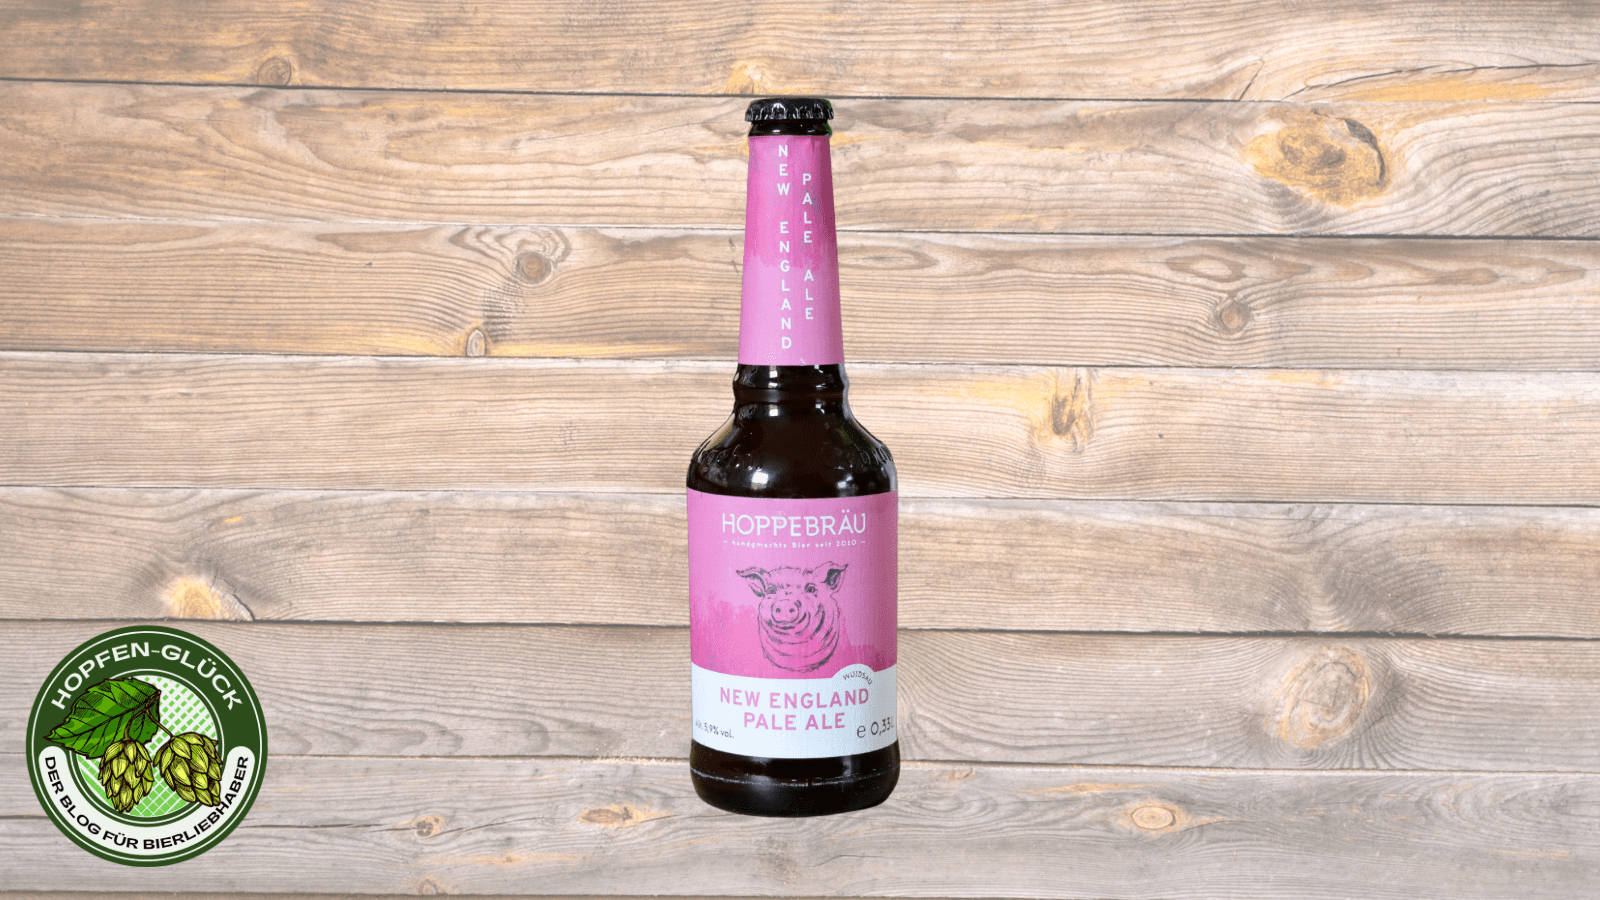 Hoppebräu – New England Pale Ale